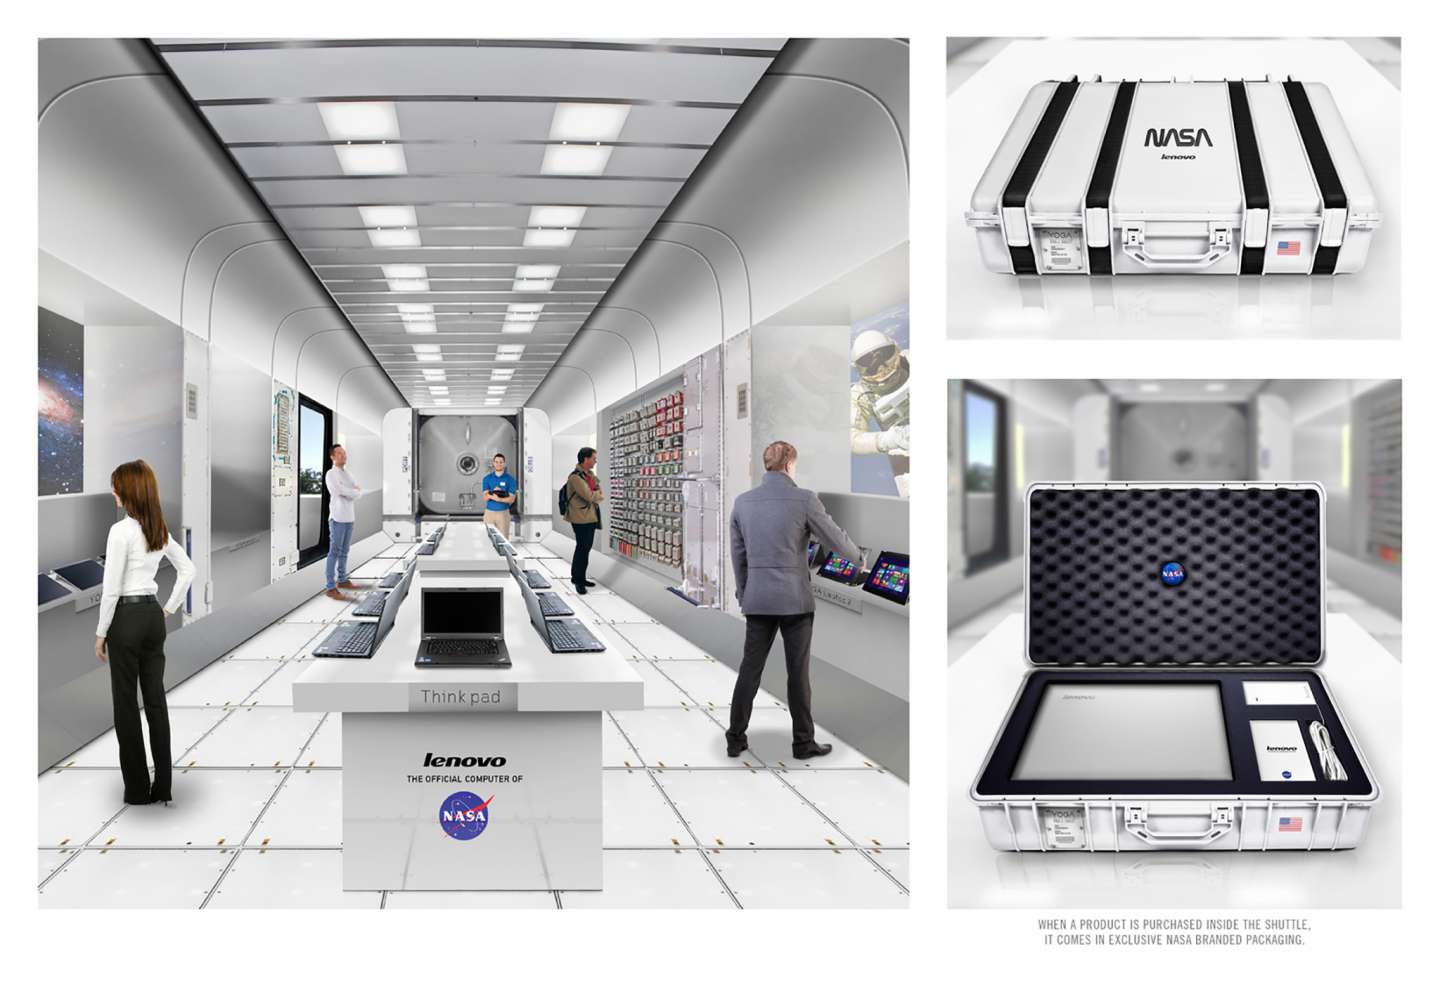 LENOVO: The Official Computer of NASA